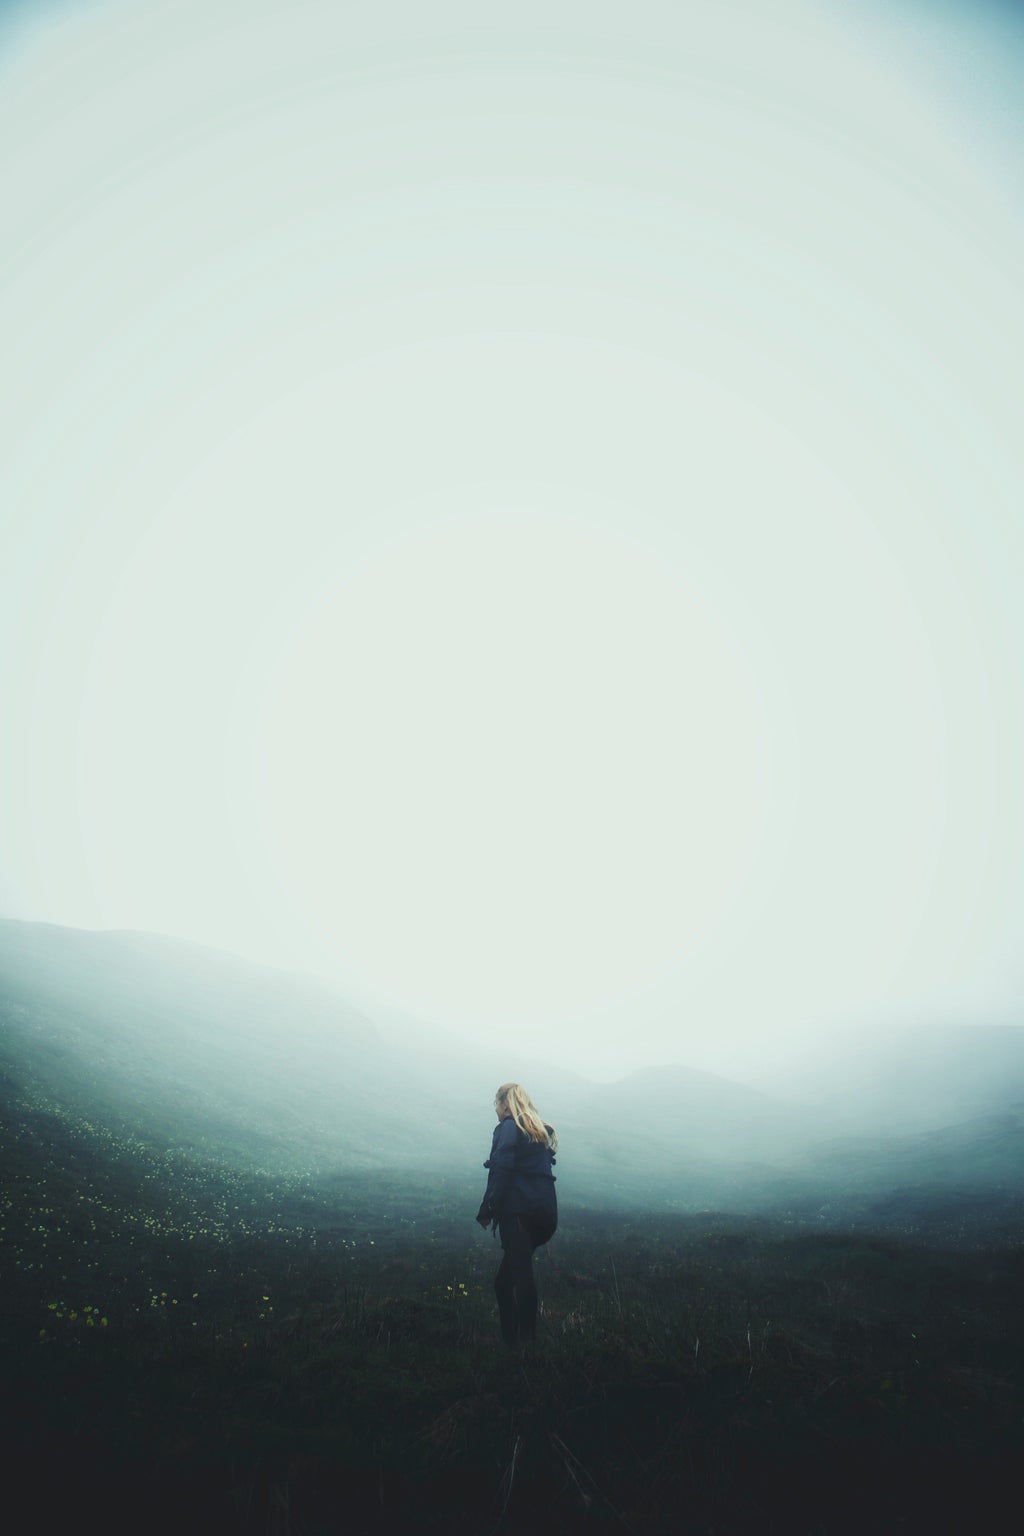 Women in a foggy landscape